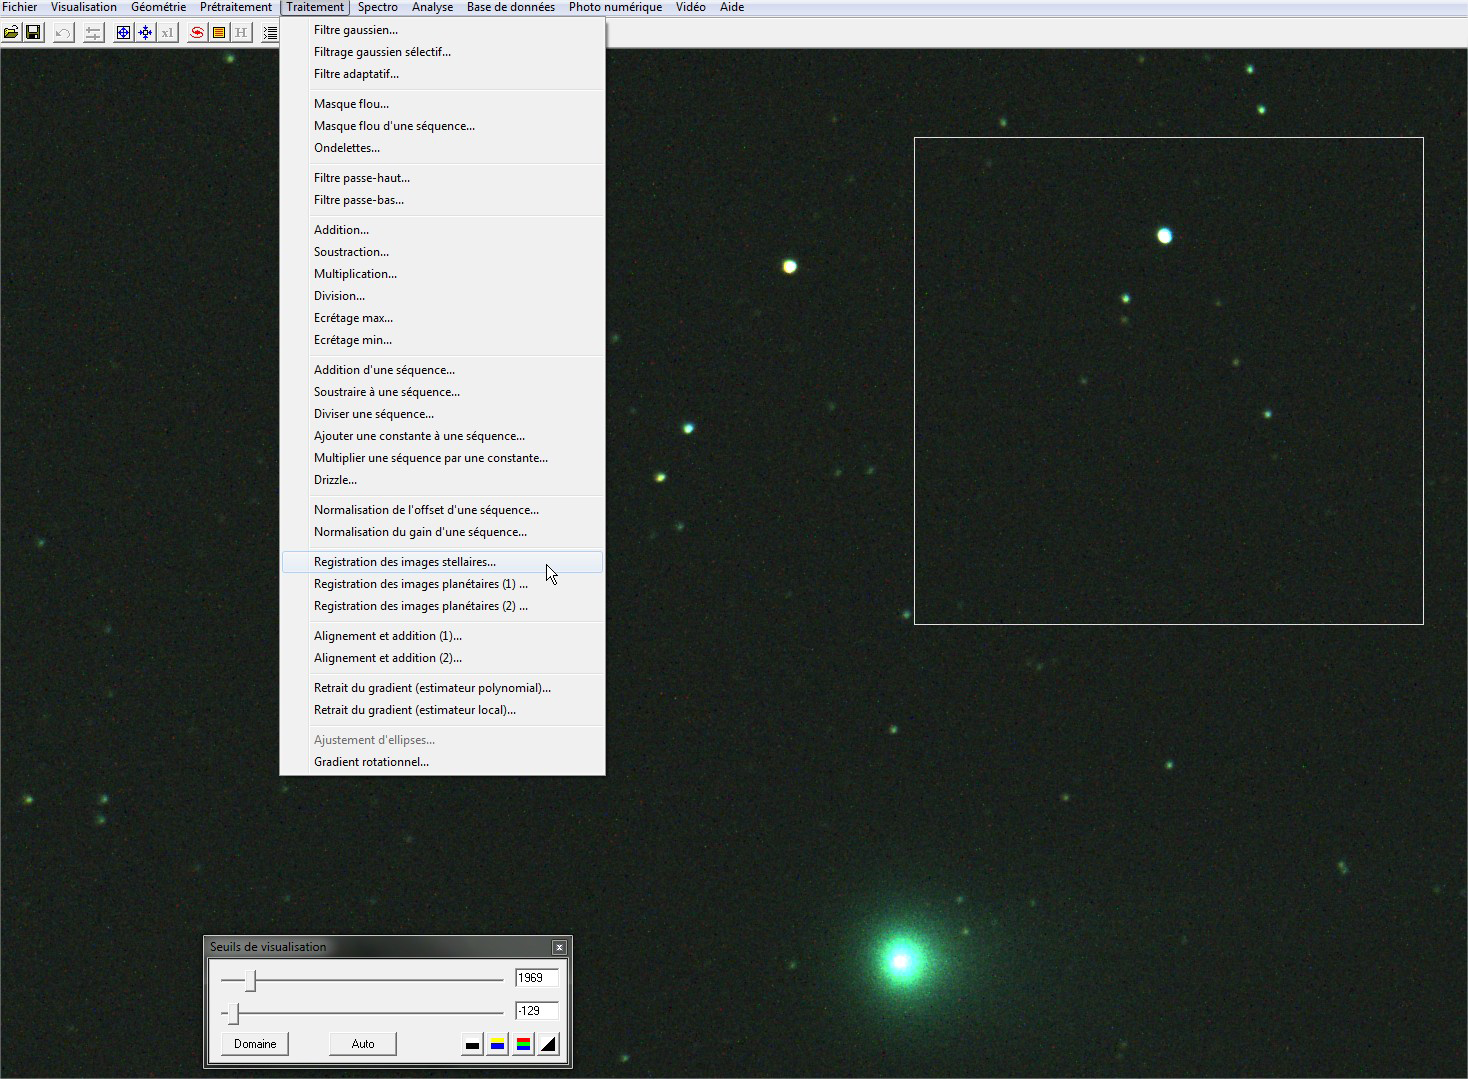 IRIS - Traitement des images de cométe http://ti oastro.free.